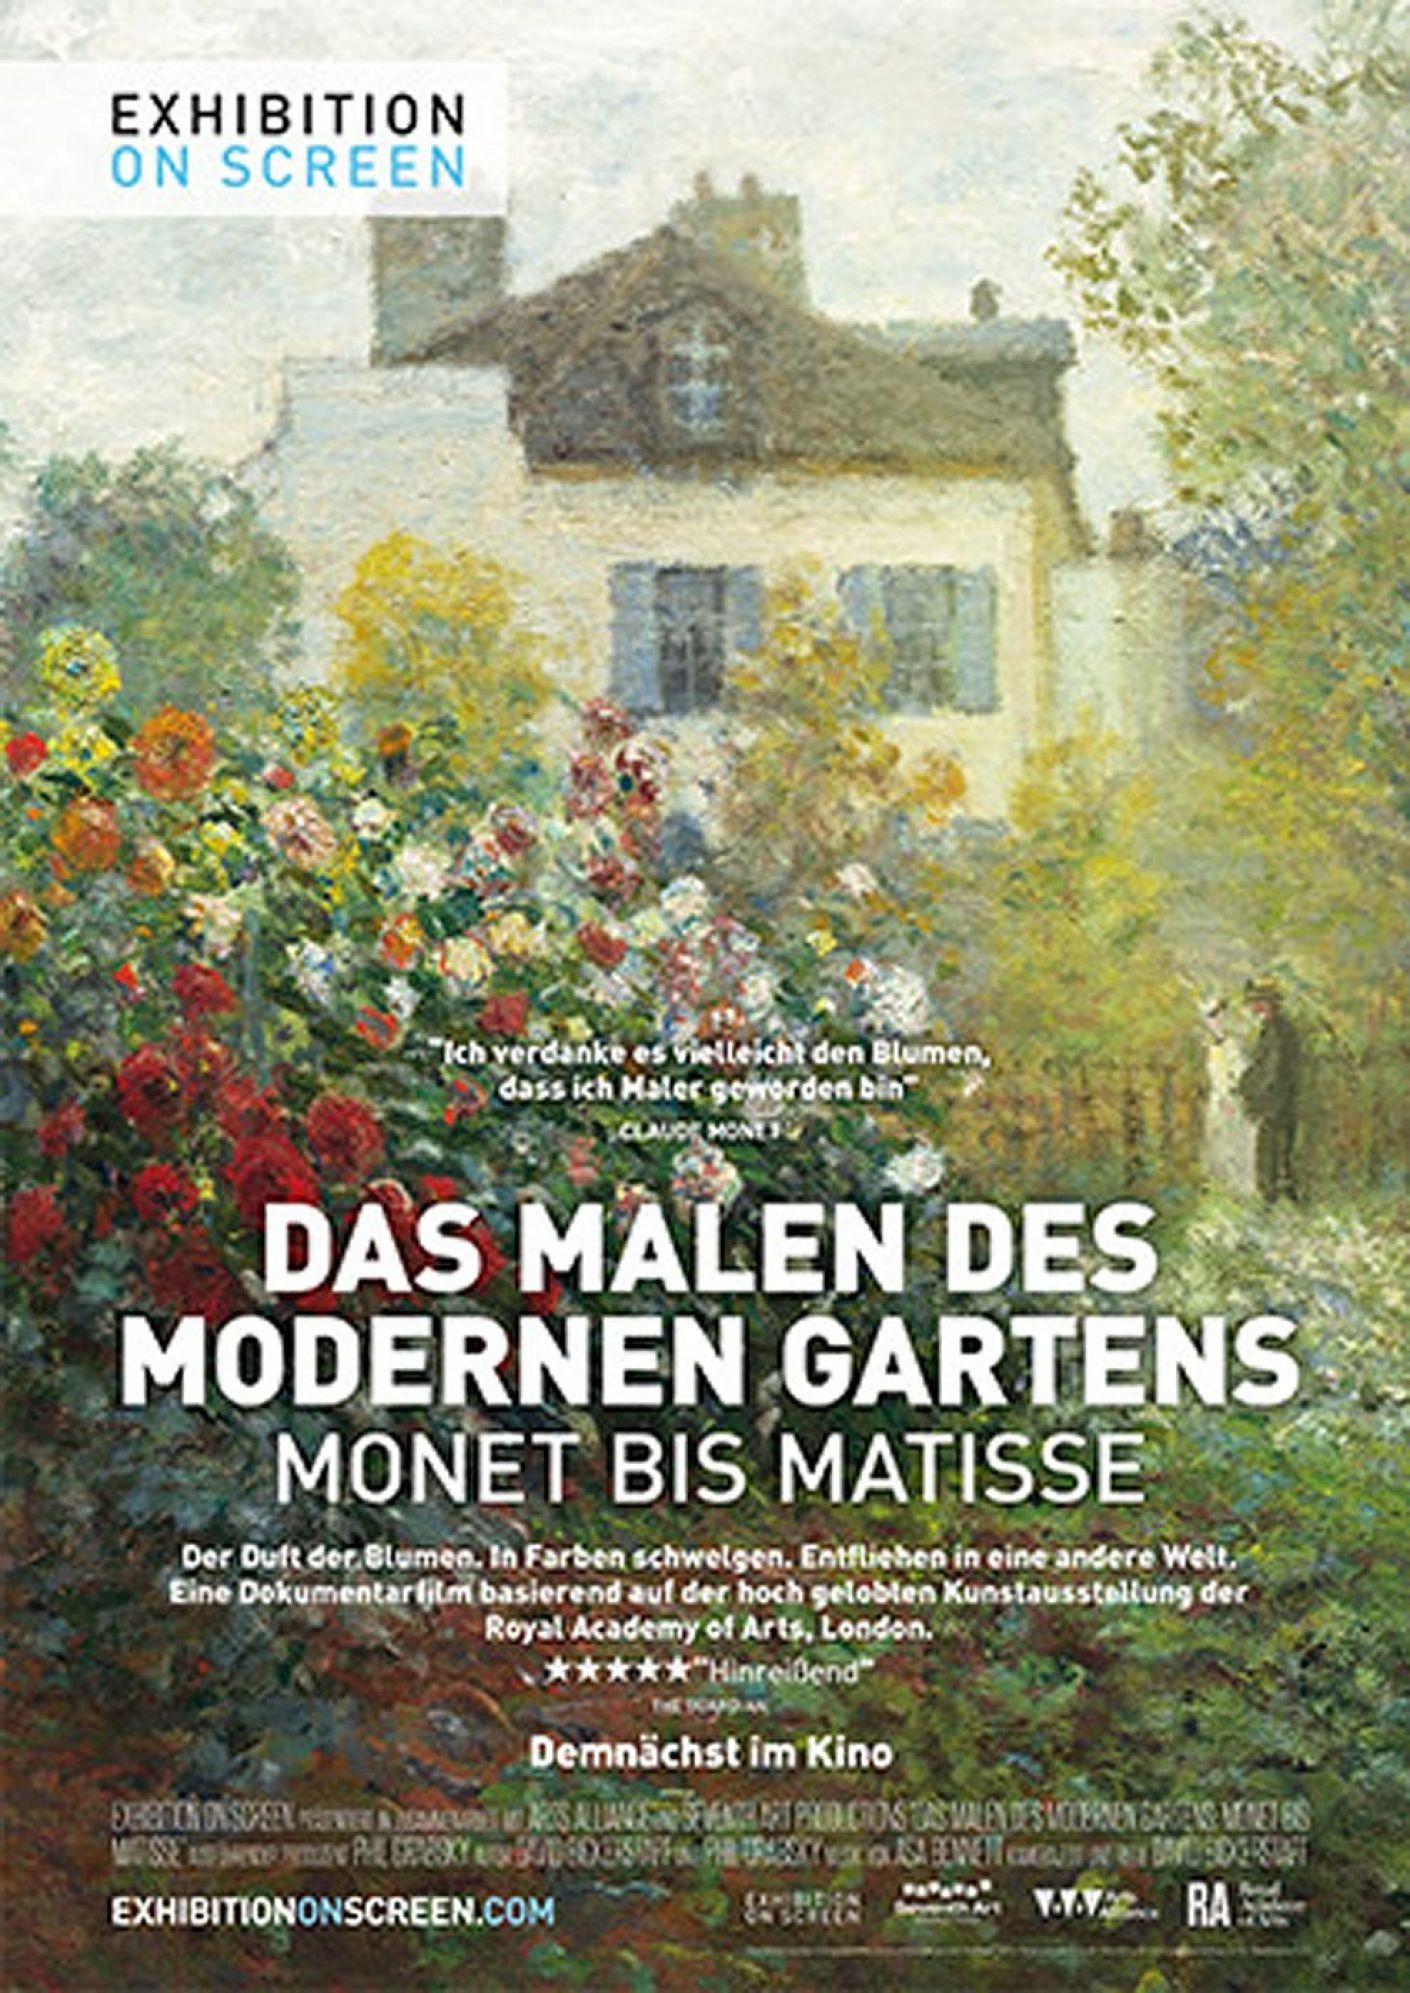 Exhibition On Screen: Das malen des modernen Gartens - Monet bis Matisse